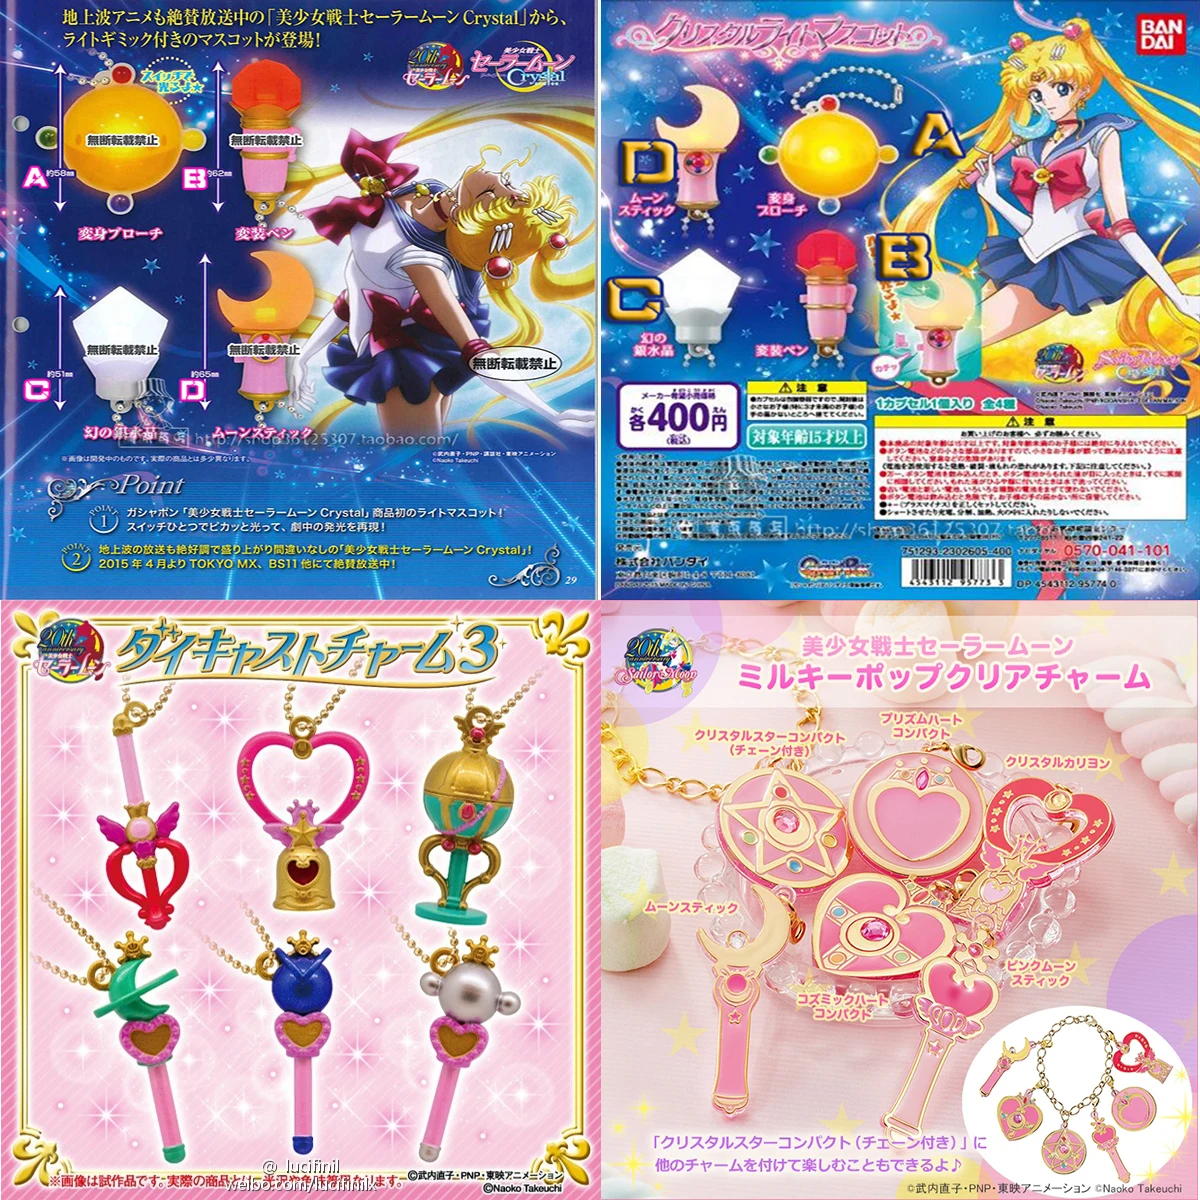 Bandai genuino Sailor Moon Gashapon giocattoli delicata lampada di cristallo trasformatore pendente Action Figure giocattoli ragazza regali